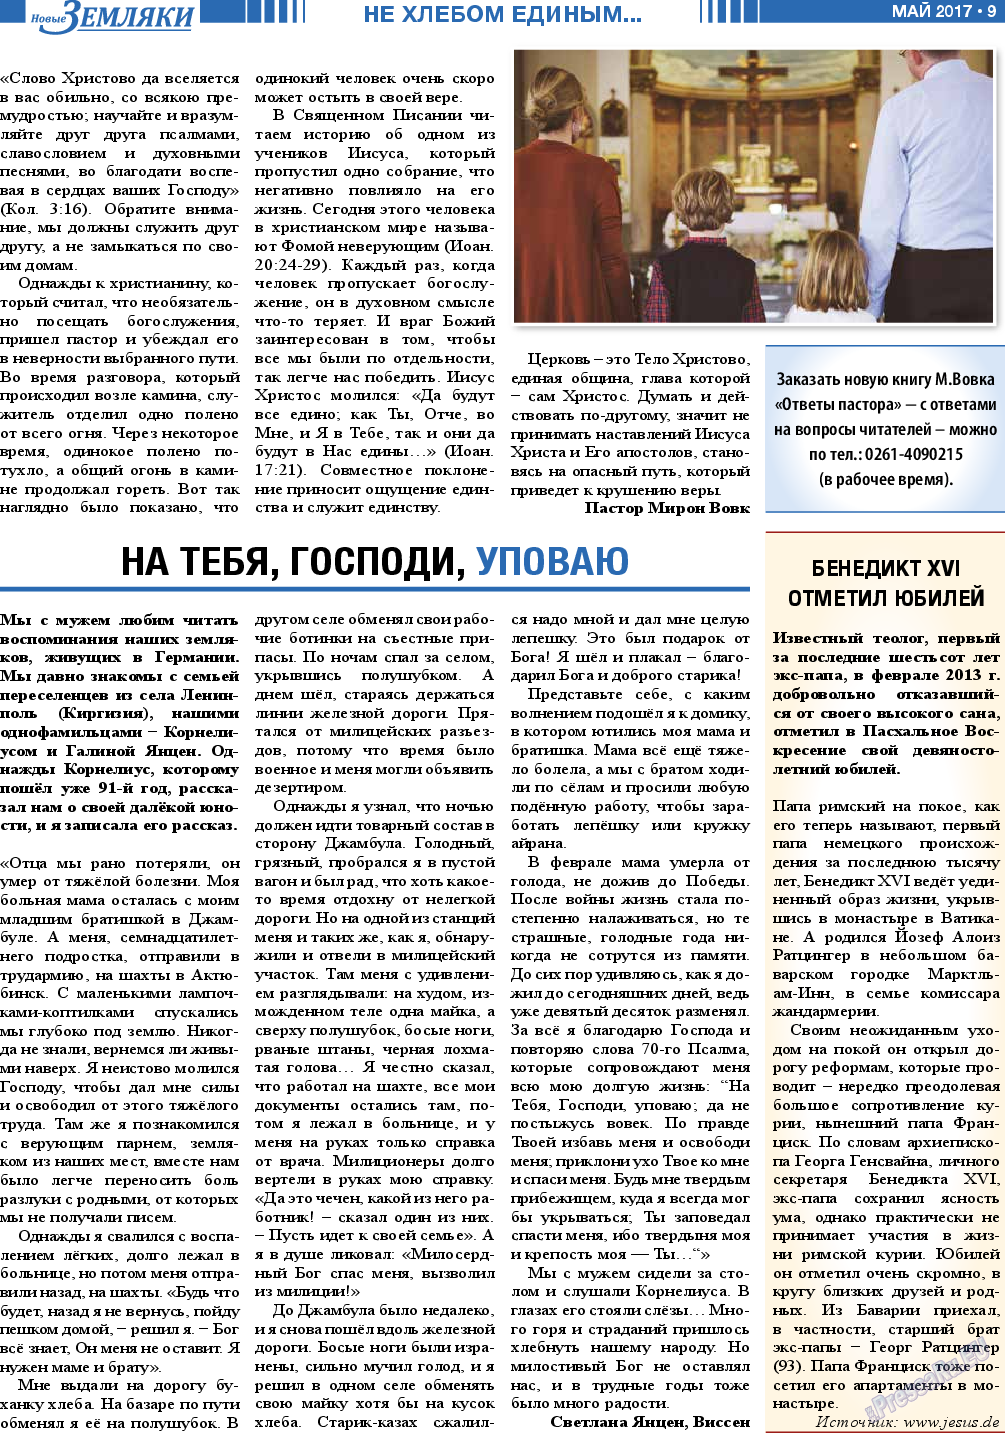 Новые Земляки, газета. 2017 №5 стр.9